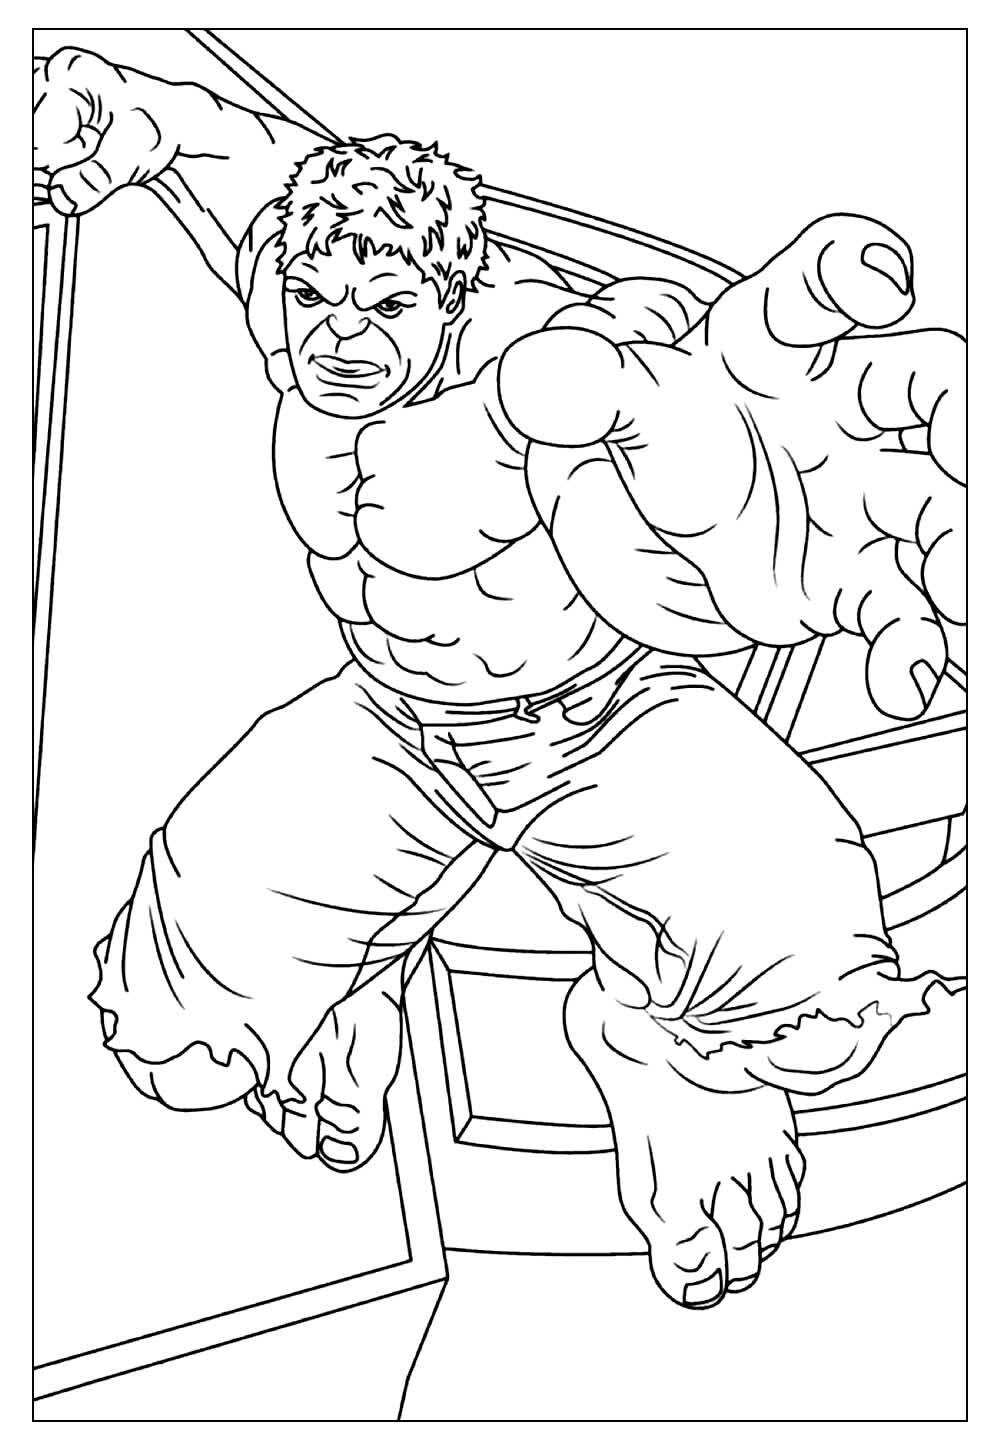 Desenho do Hulk para pintar